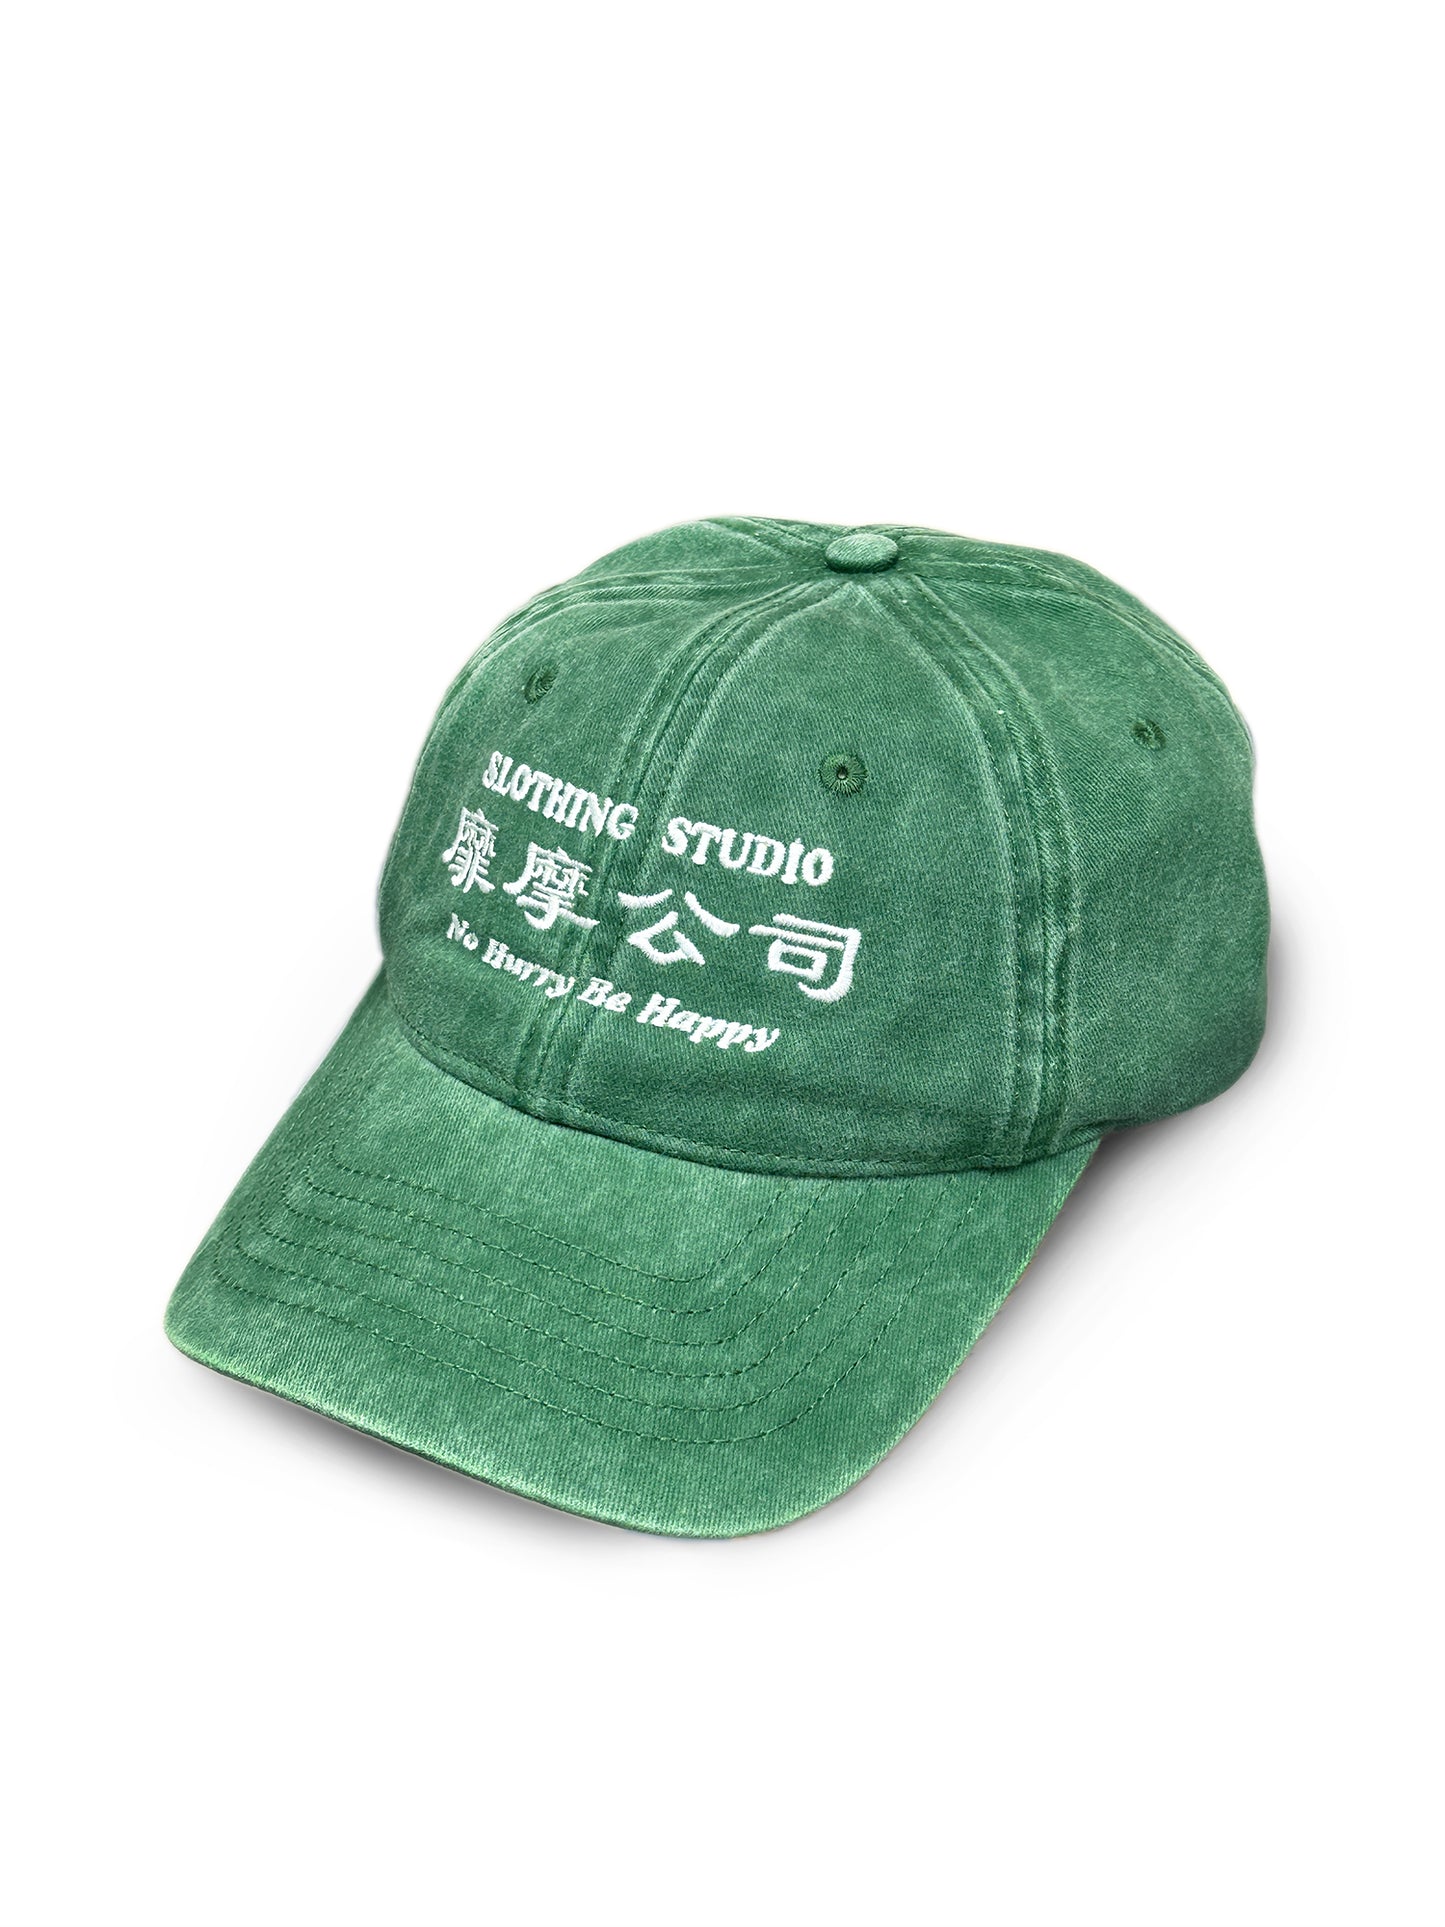 Company Vintage Baseball Cap/ Green